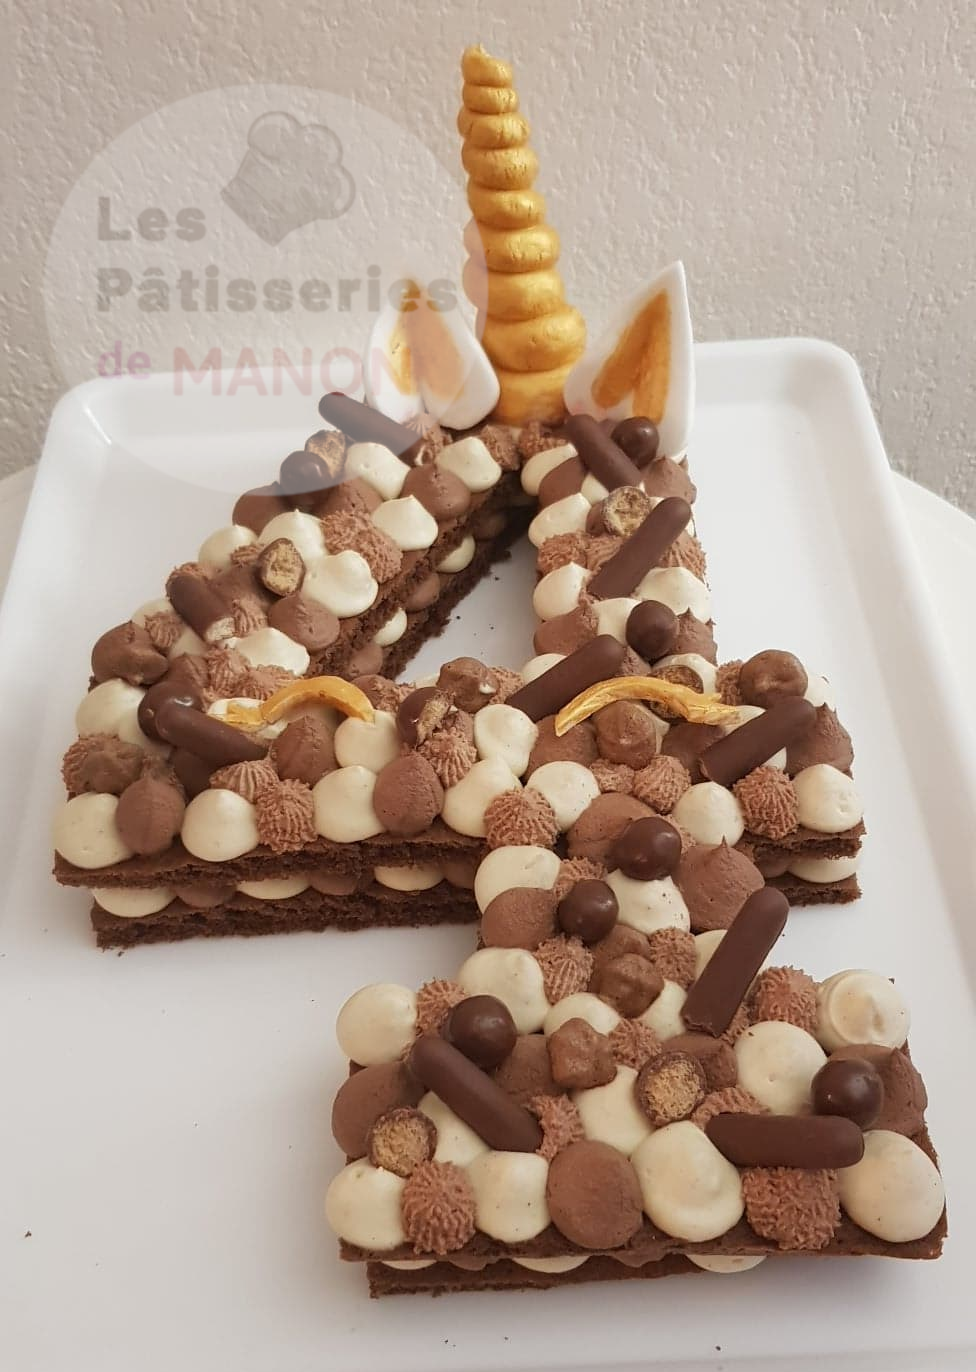 Number cake tout chocolat façon Licorne - Les Pâtisseries de Manon